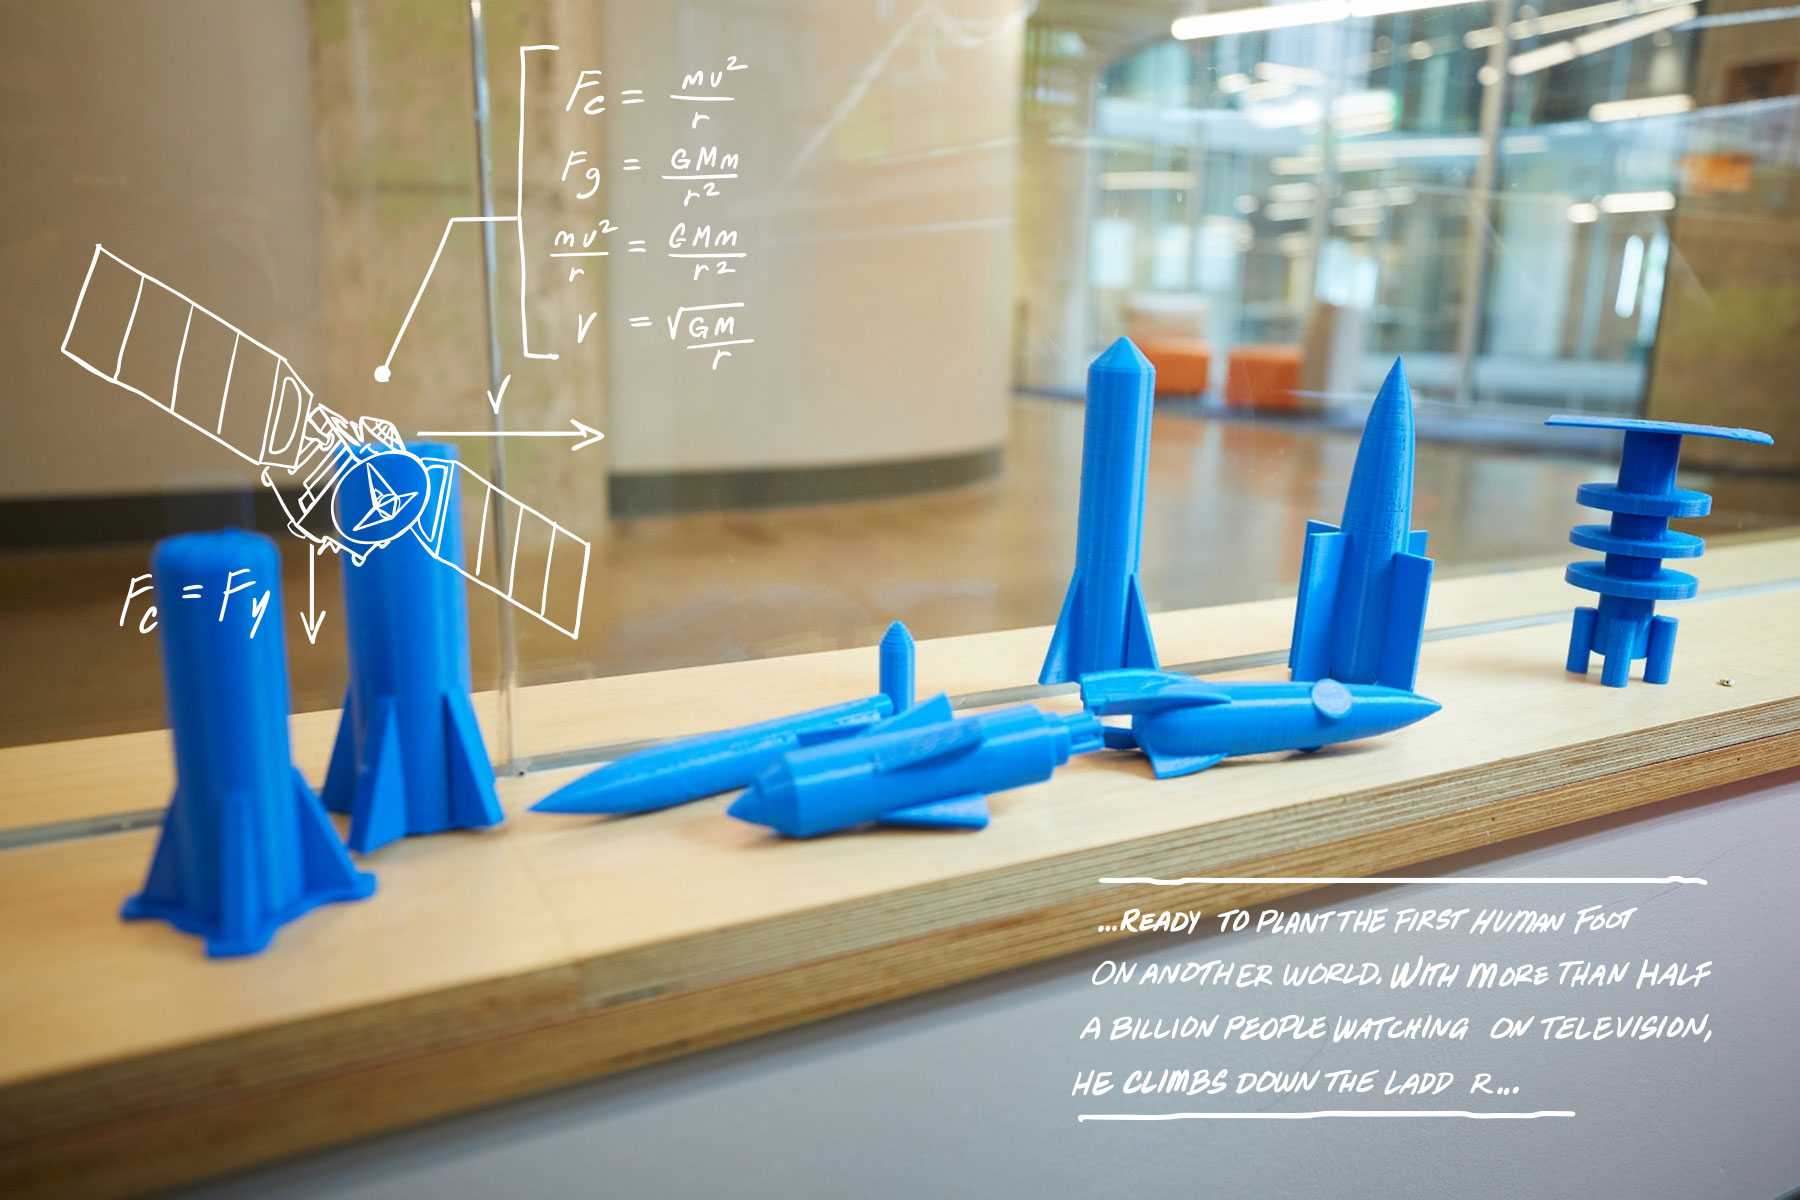 small plastic rocket models